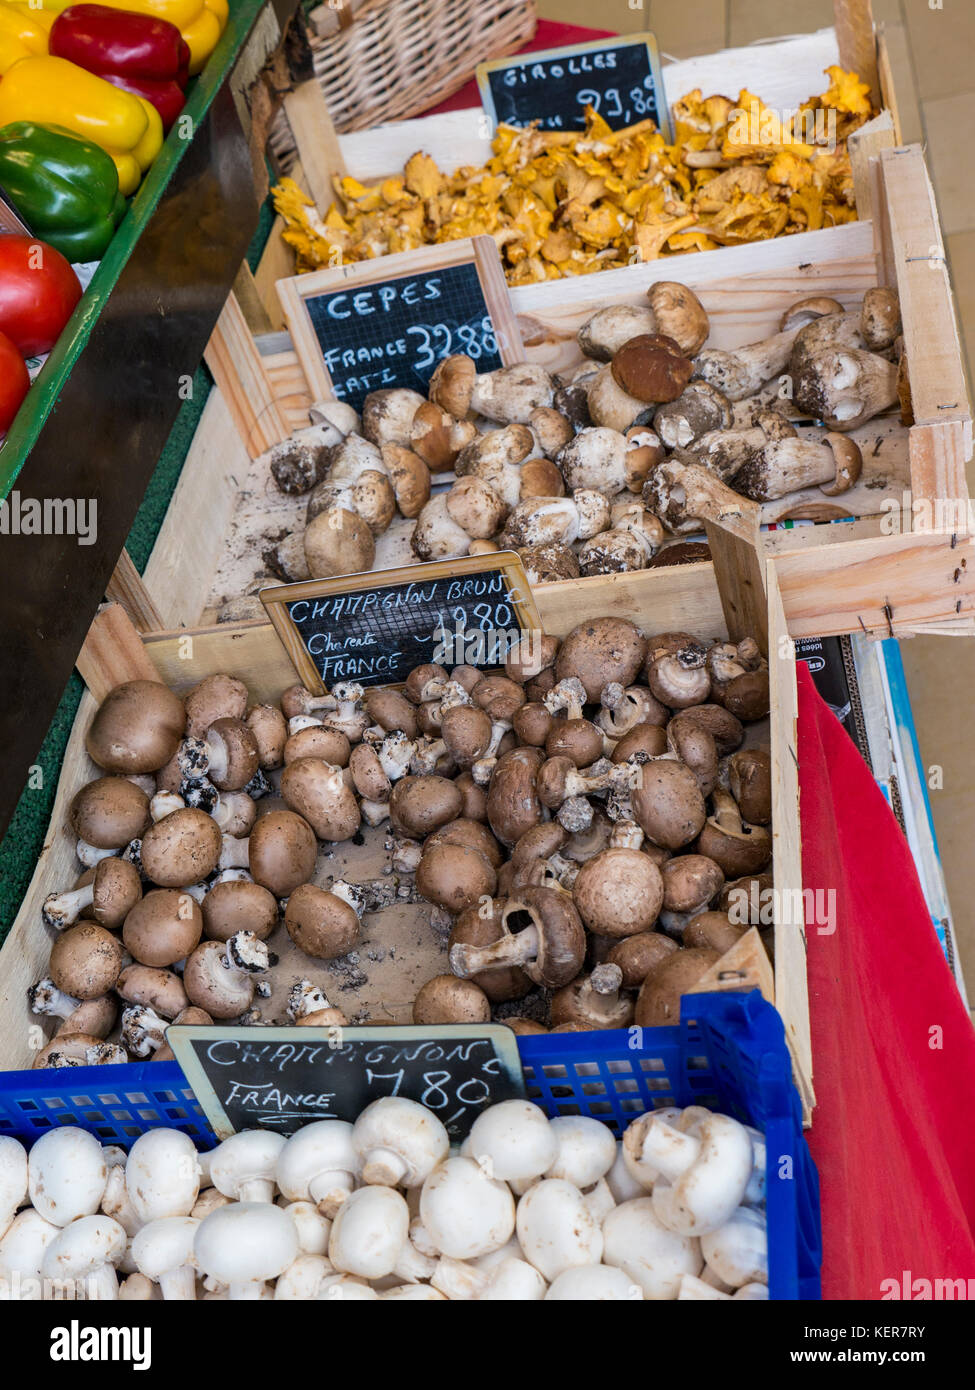 Bancarelle di funghi francesi nel mercato agricolo della Bretagna con selezione di Champignons Girolles Cepes Brown e White in casse rustiche di legno Concarneau Bretagna Foto Stock